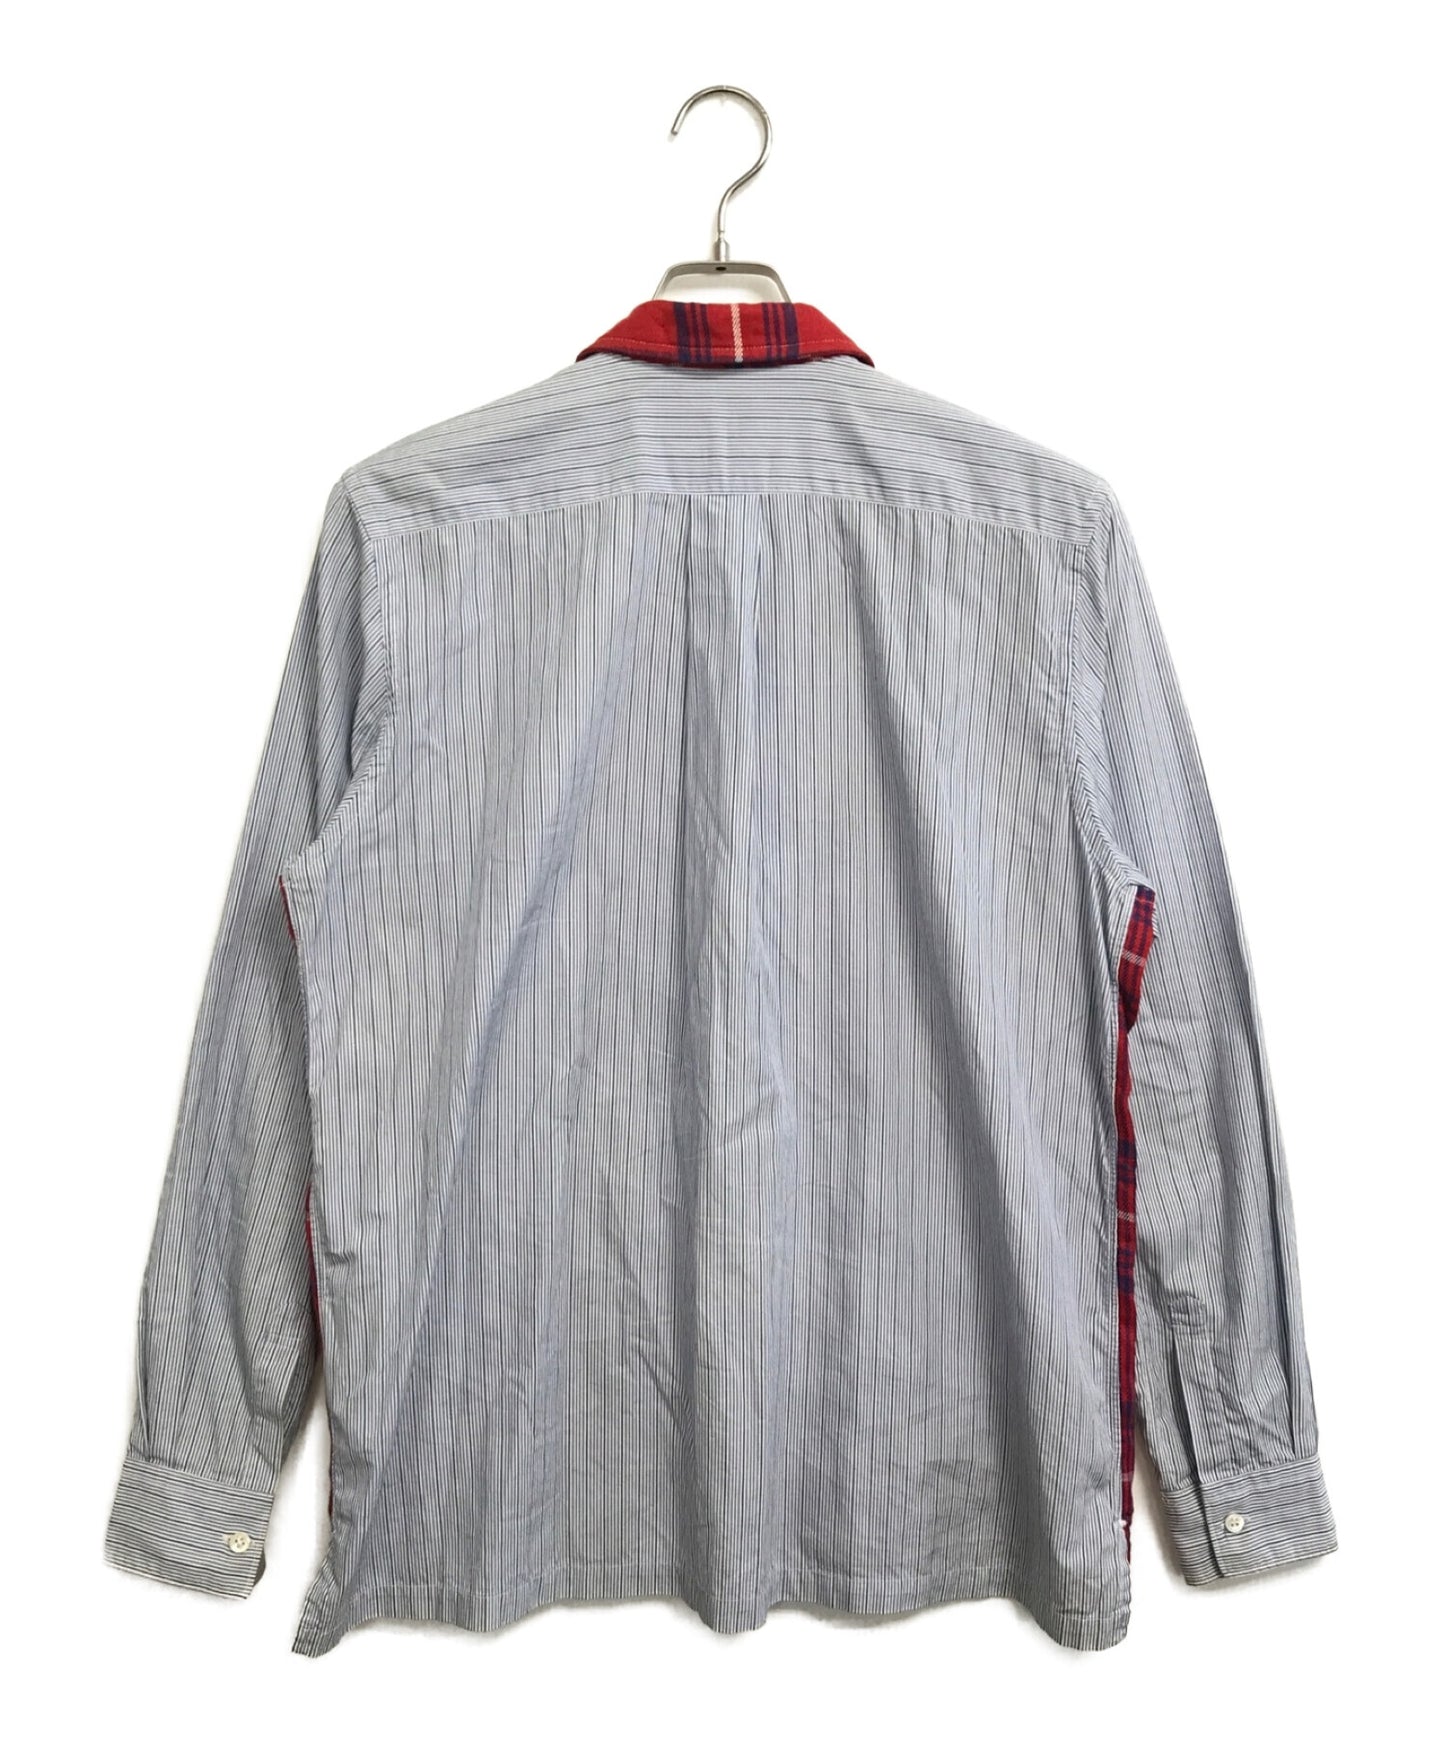 Comme des Garcons衬衫00的前检查条纹衬衫夹克S10162